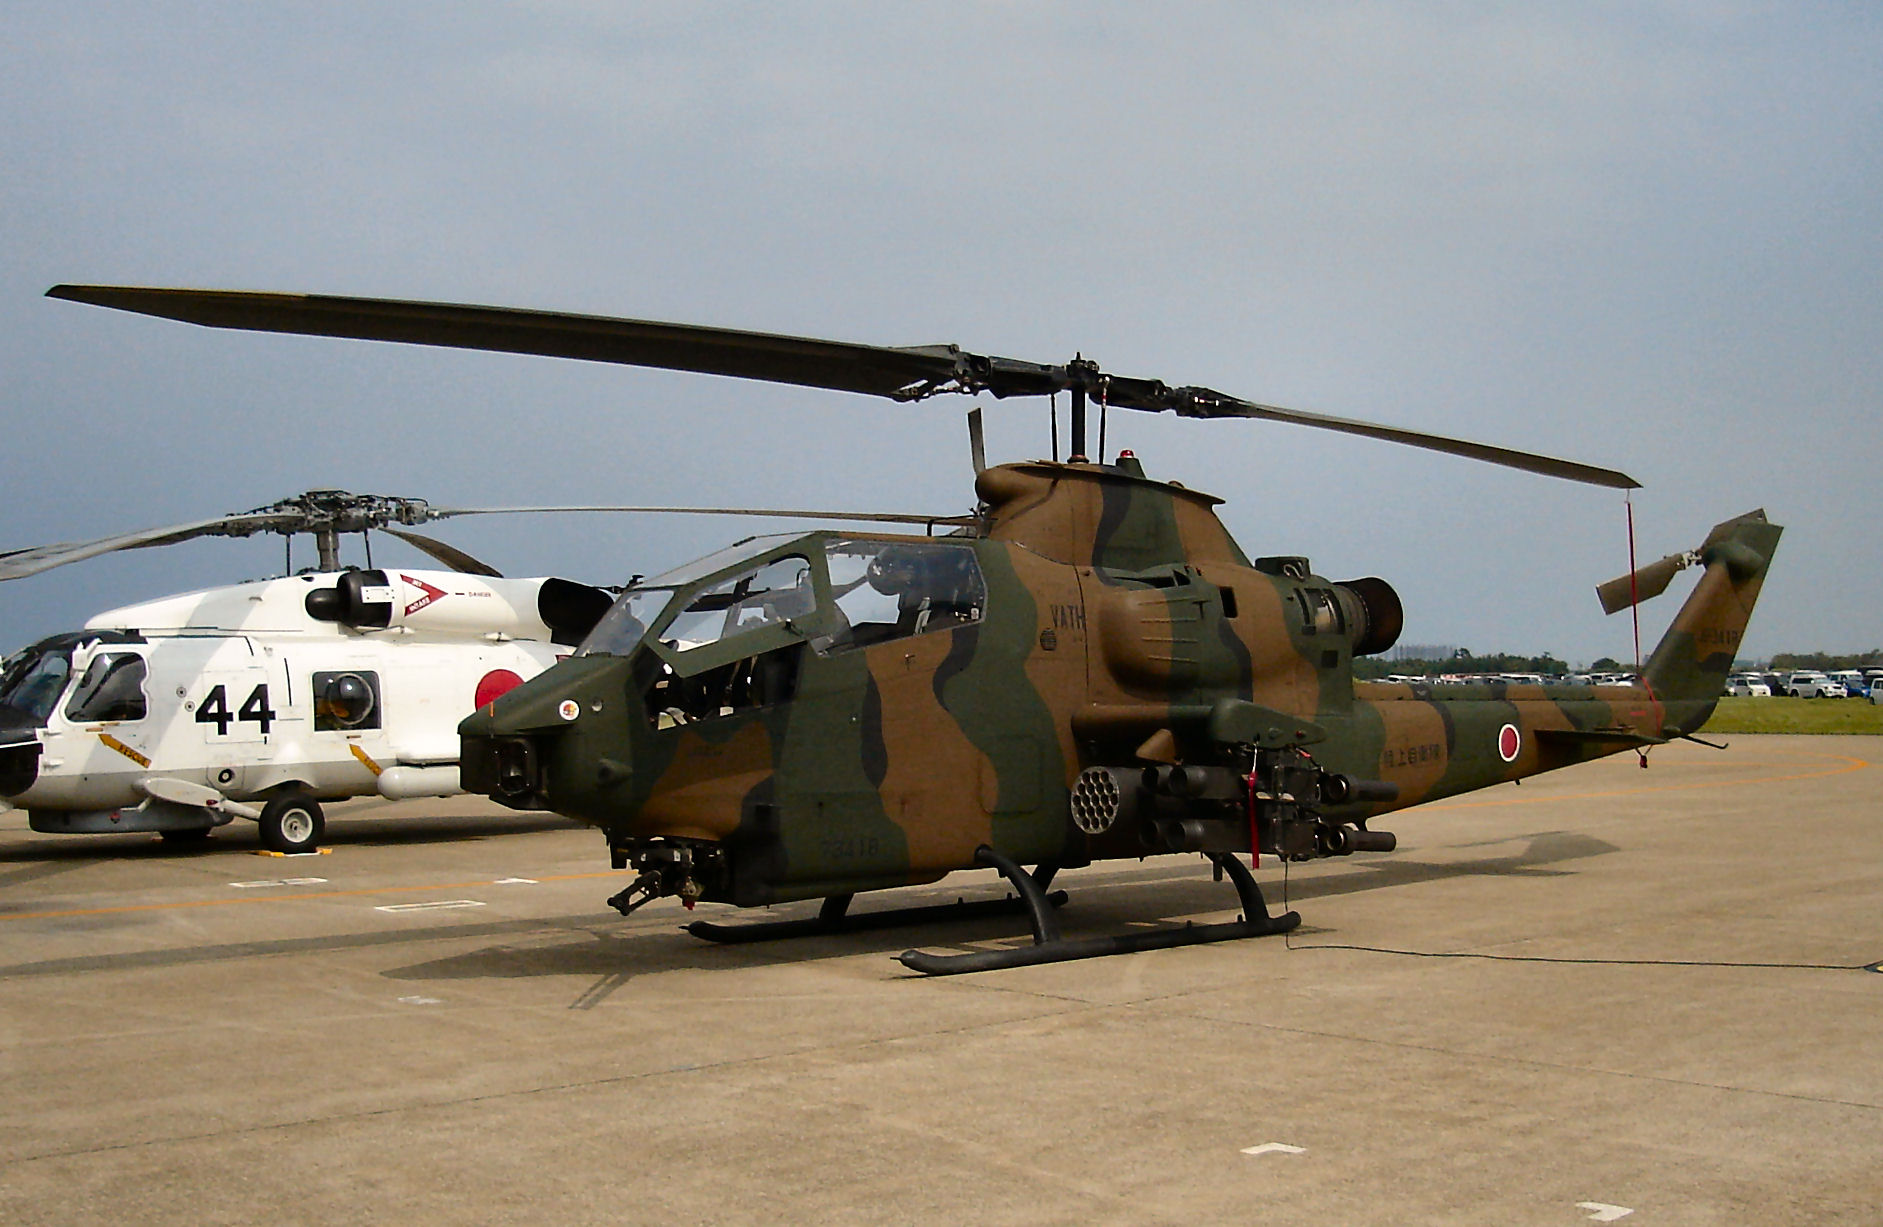 HQ Bell AH-1 Cobra Wallpapers | File 302.73Kb